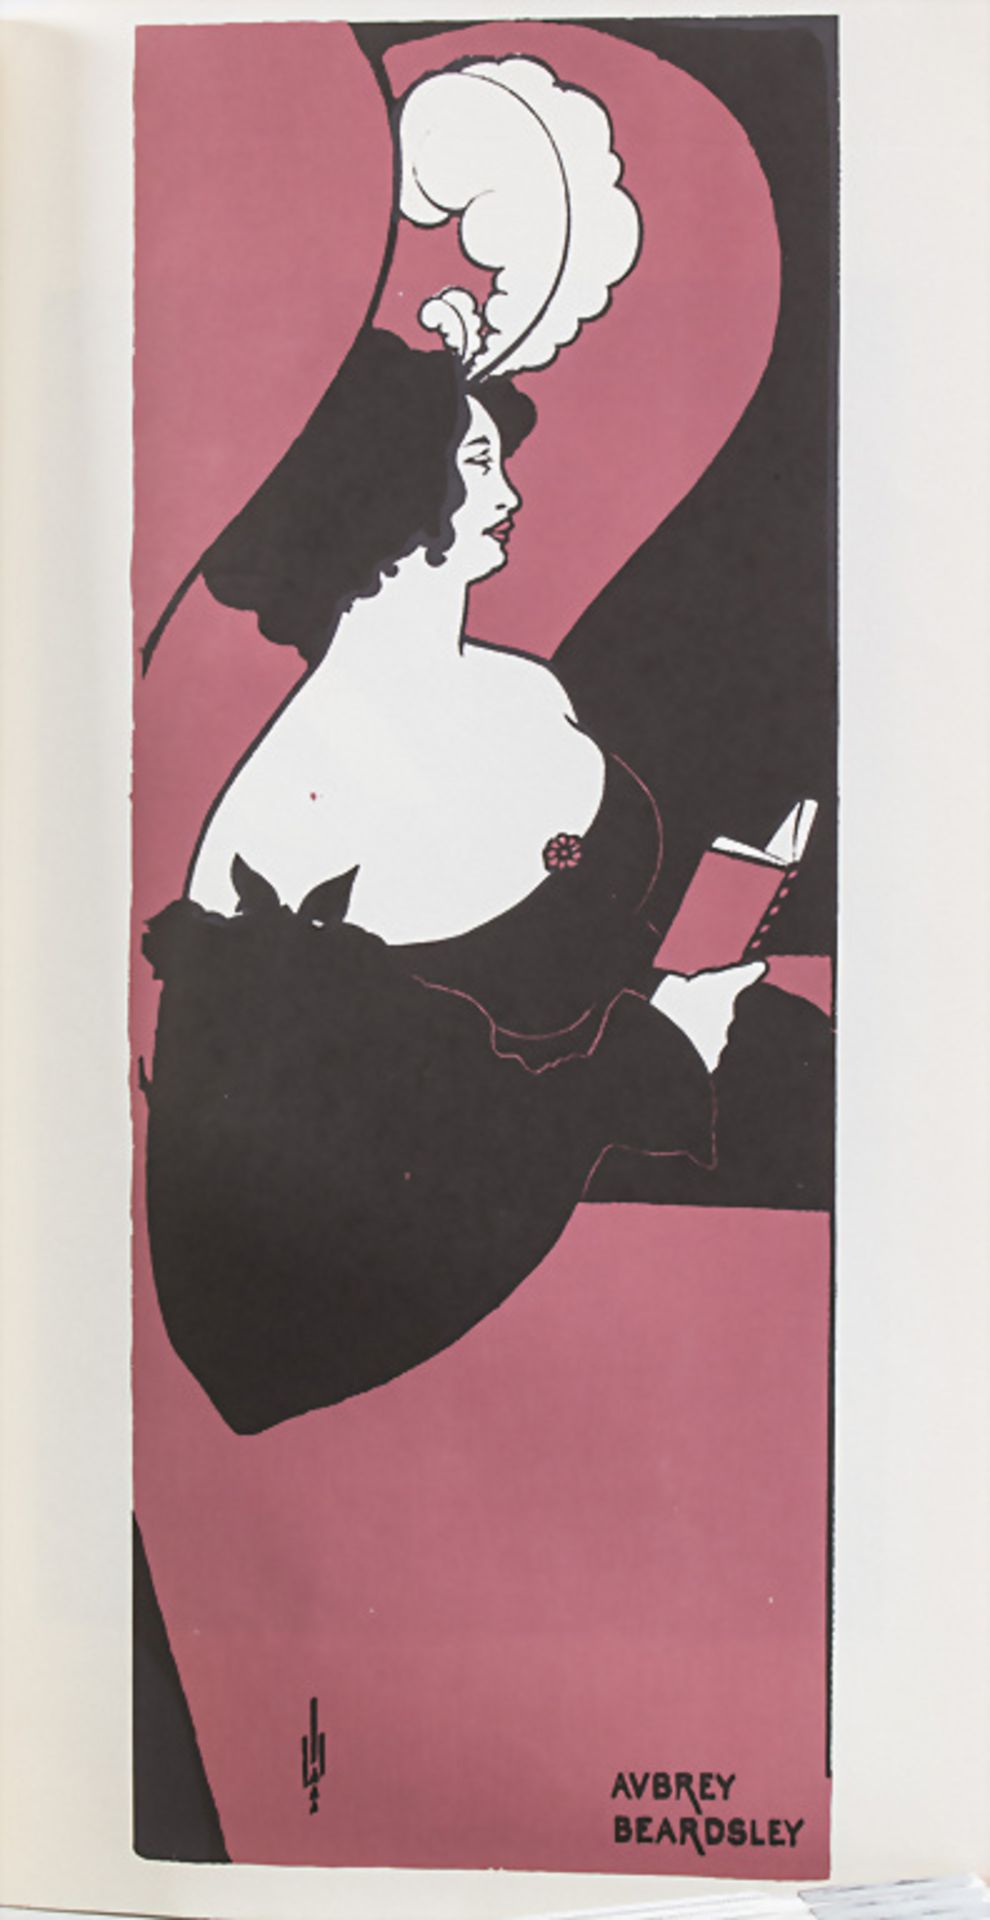 Jugendstil Sammlung Kunstblätter / A collection of Art Nouveau art prints - Image 3 of 4